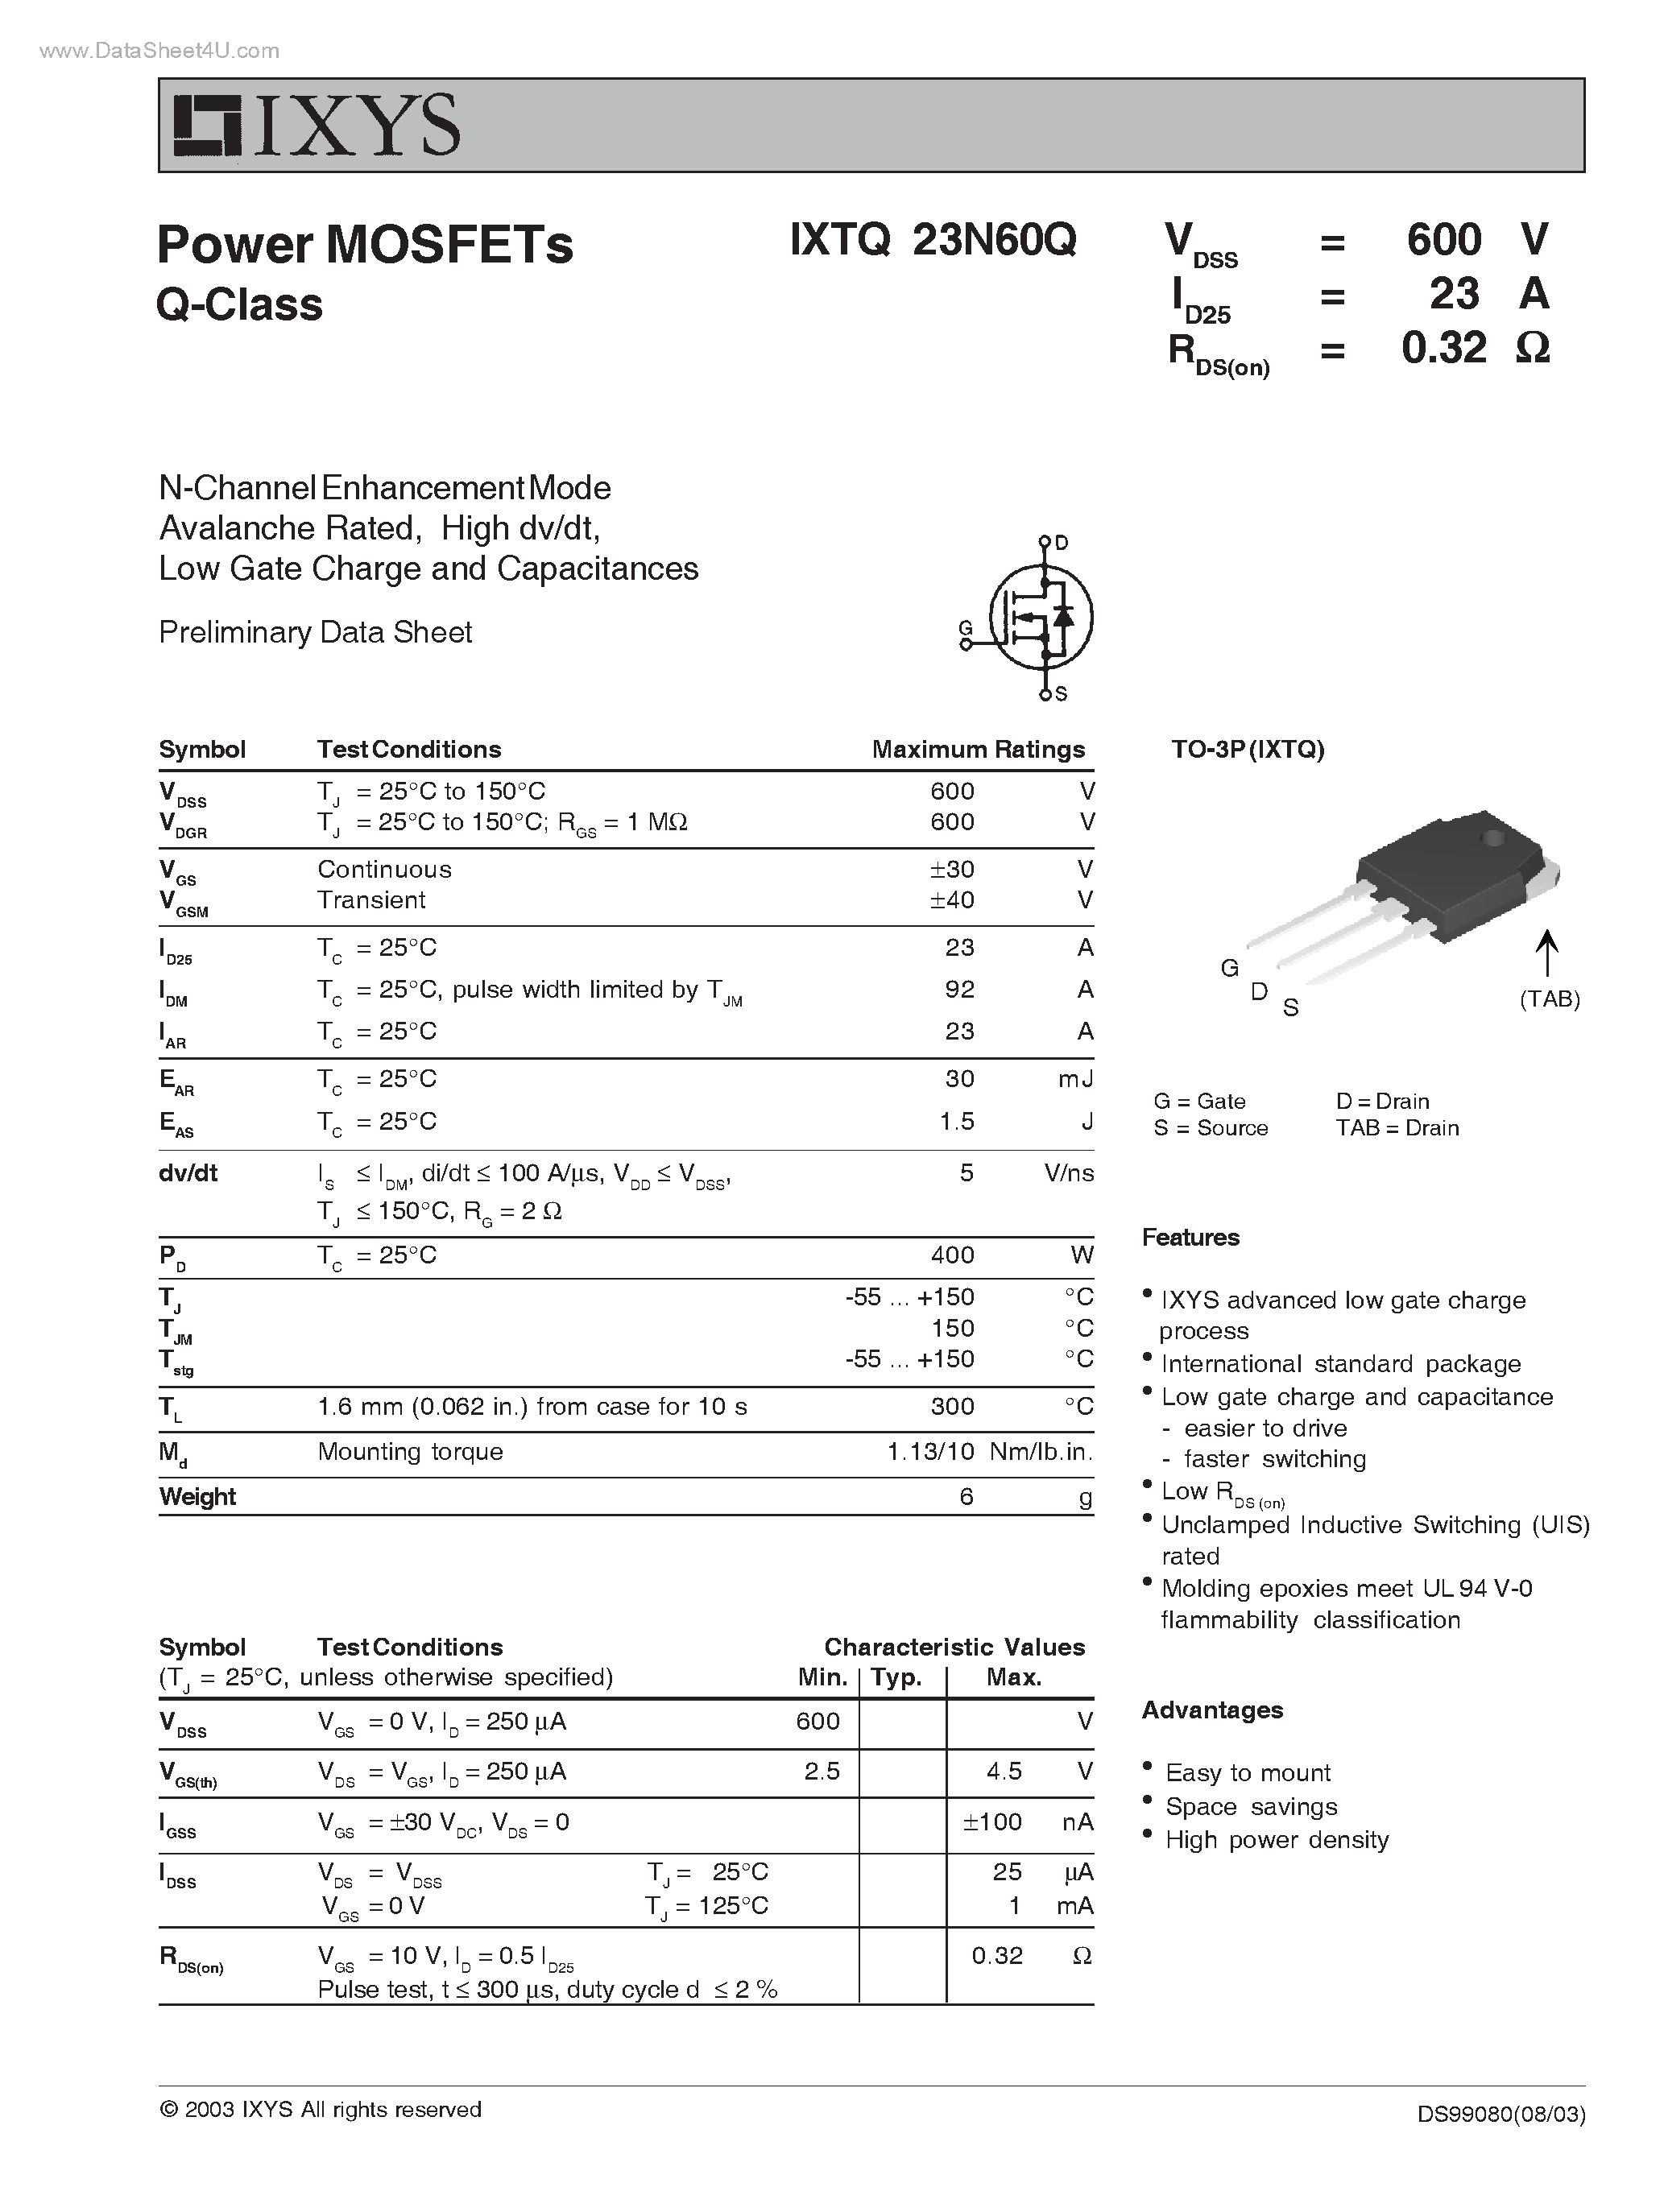 Даташит IXTQ23N60Q - Power MOSFETs Q-Class страница 1